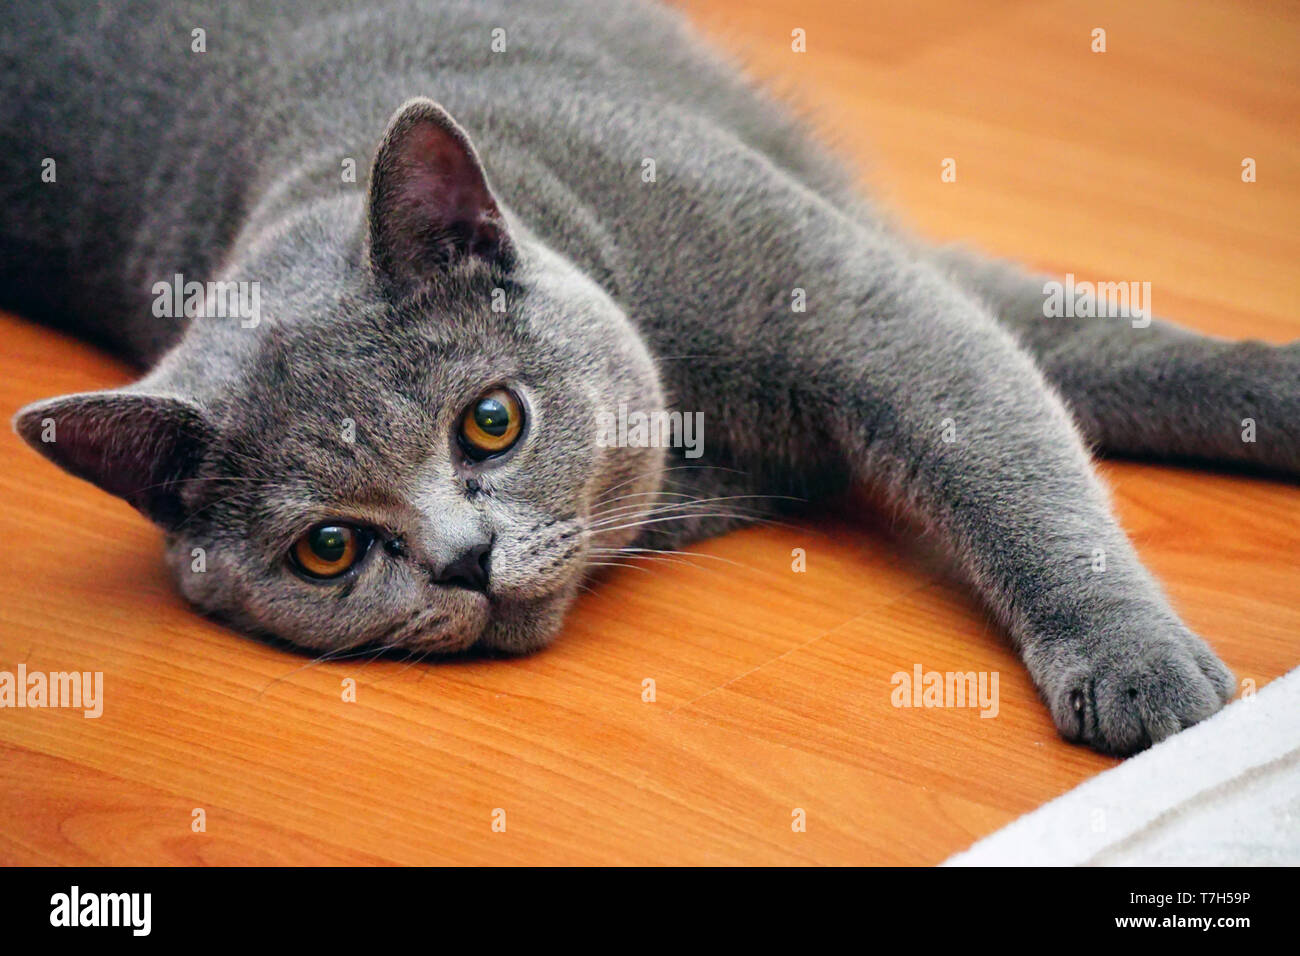 British Shorthair gato con pelaje gris y ojos de color ámbar Foto de stock